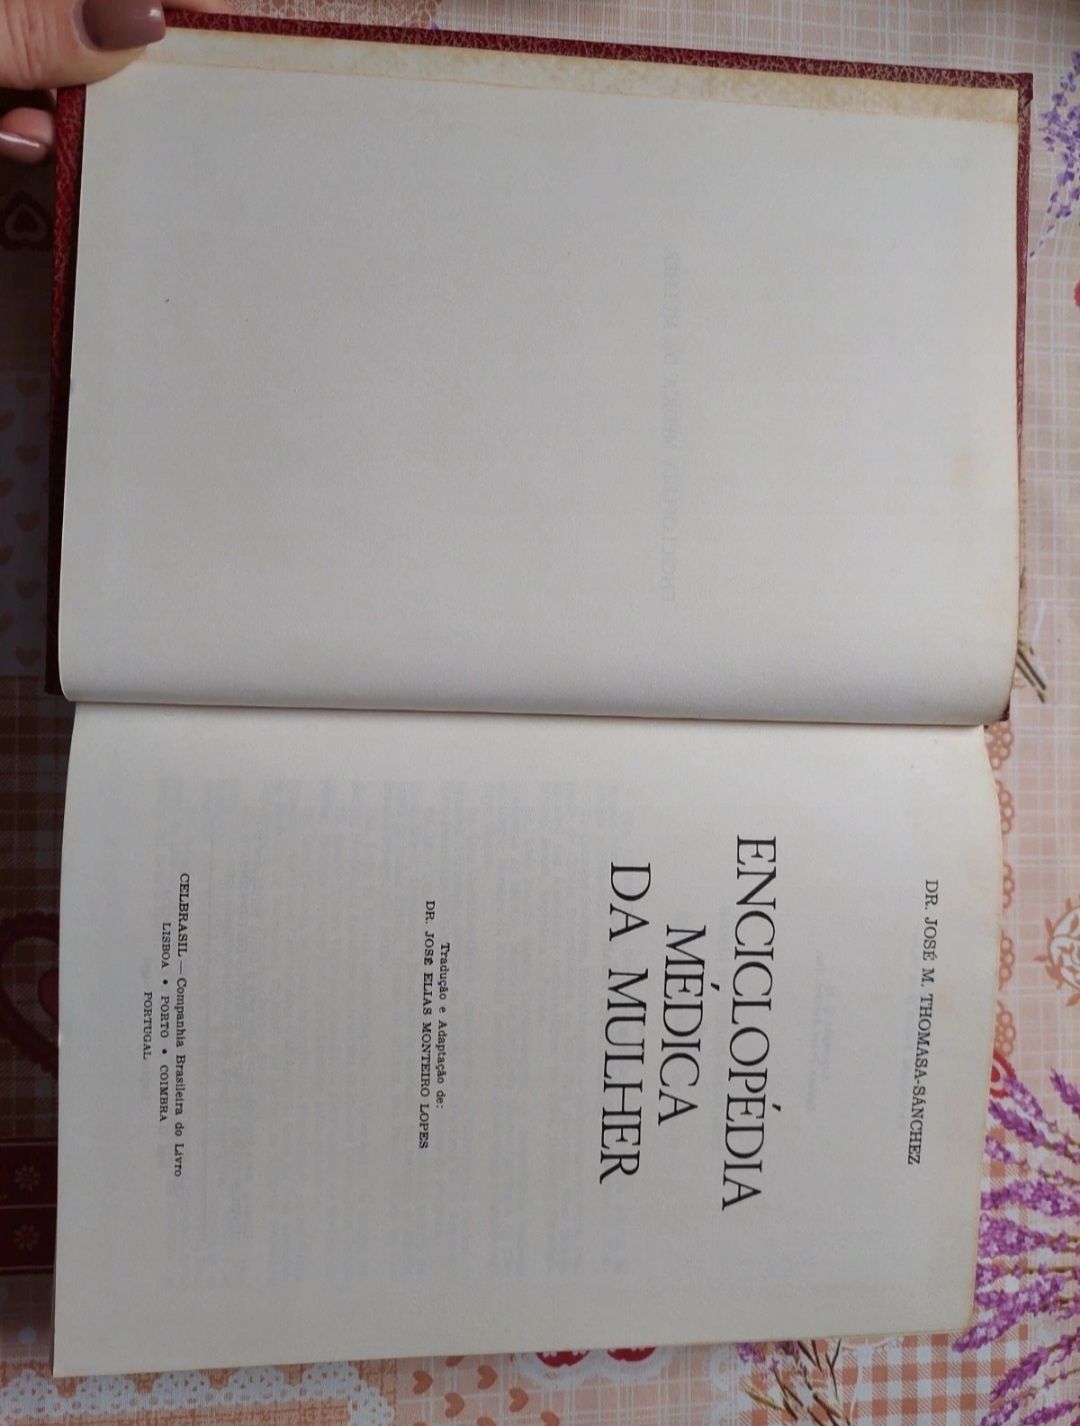 3 volumes do "Dicionário Médico da Família"